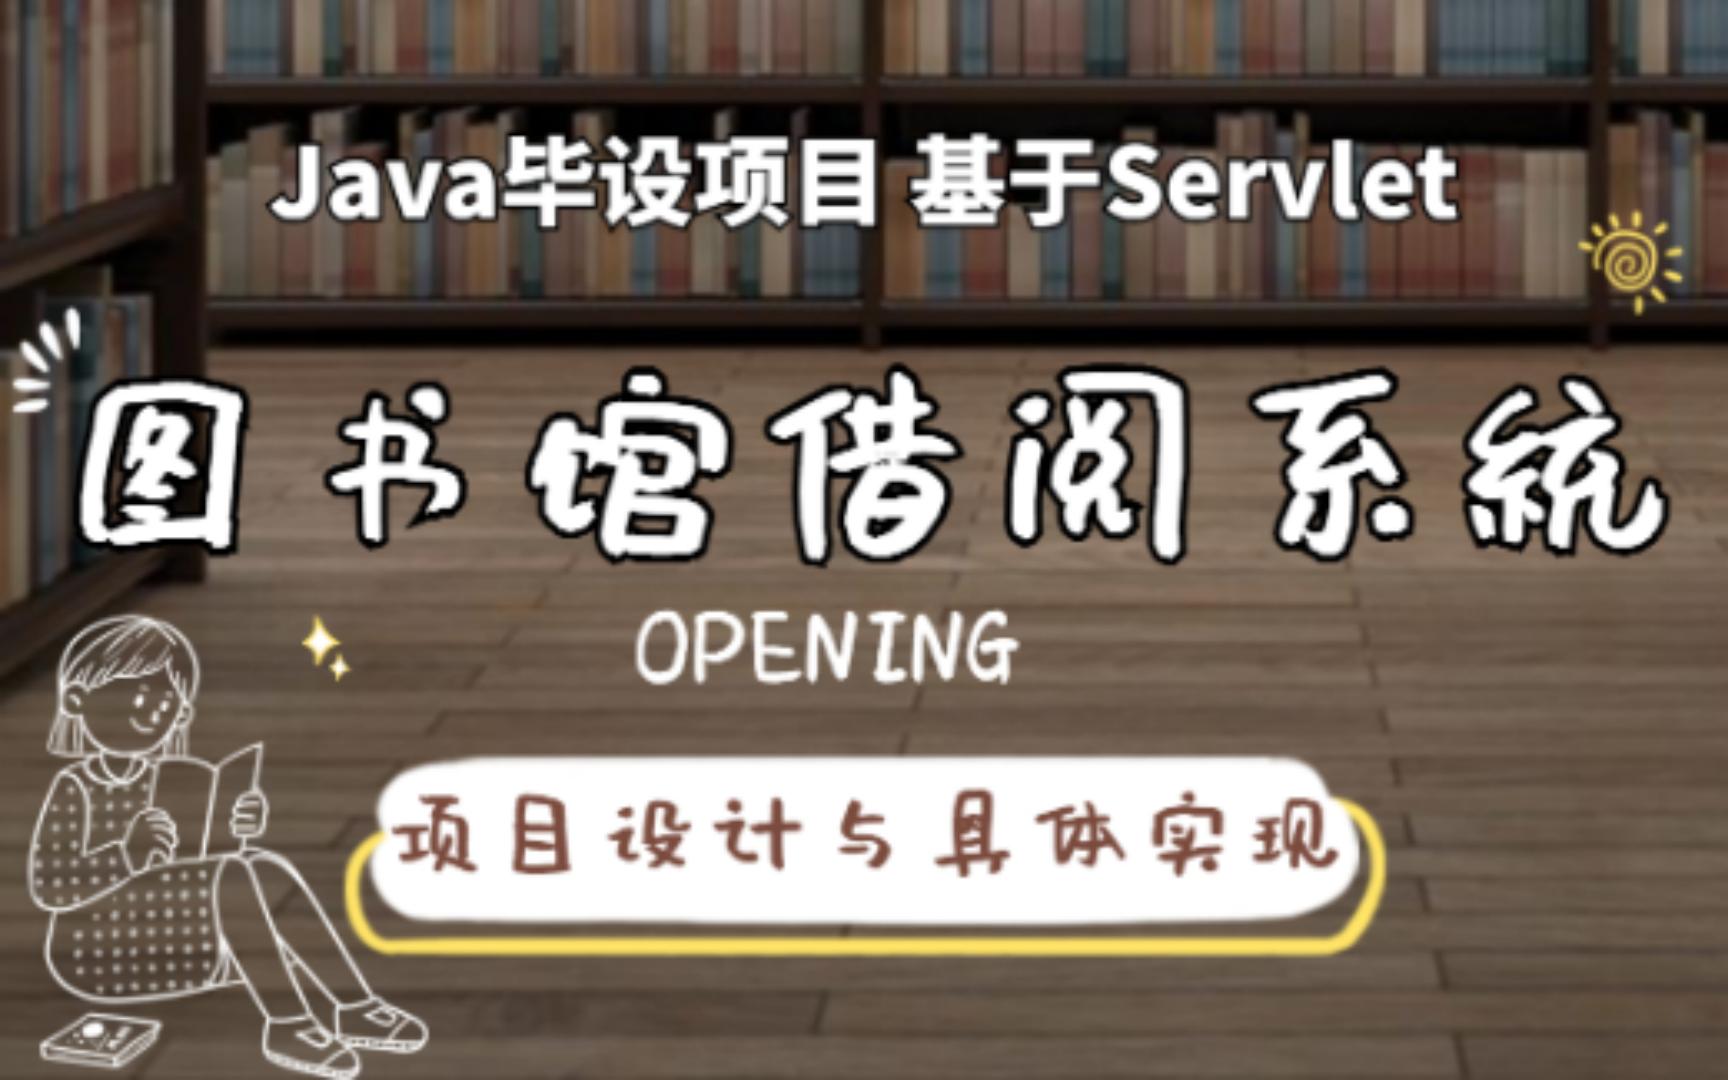 【最新Servlet项目】60分钟带你上手搭建基于Java的图书馆借阅系统（源码+数据库+文档+资料）_课程设计_毕业设计_Java实战项目